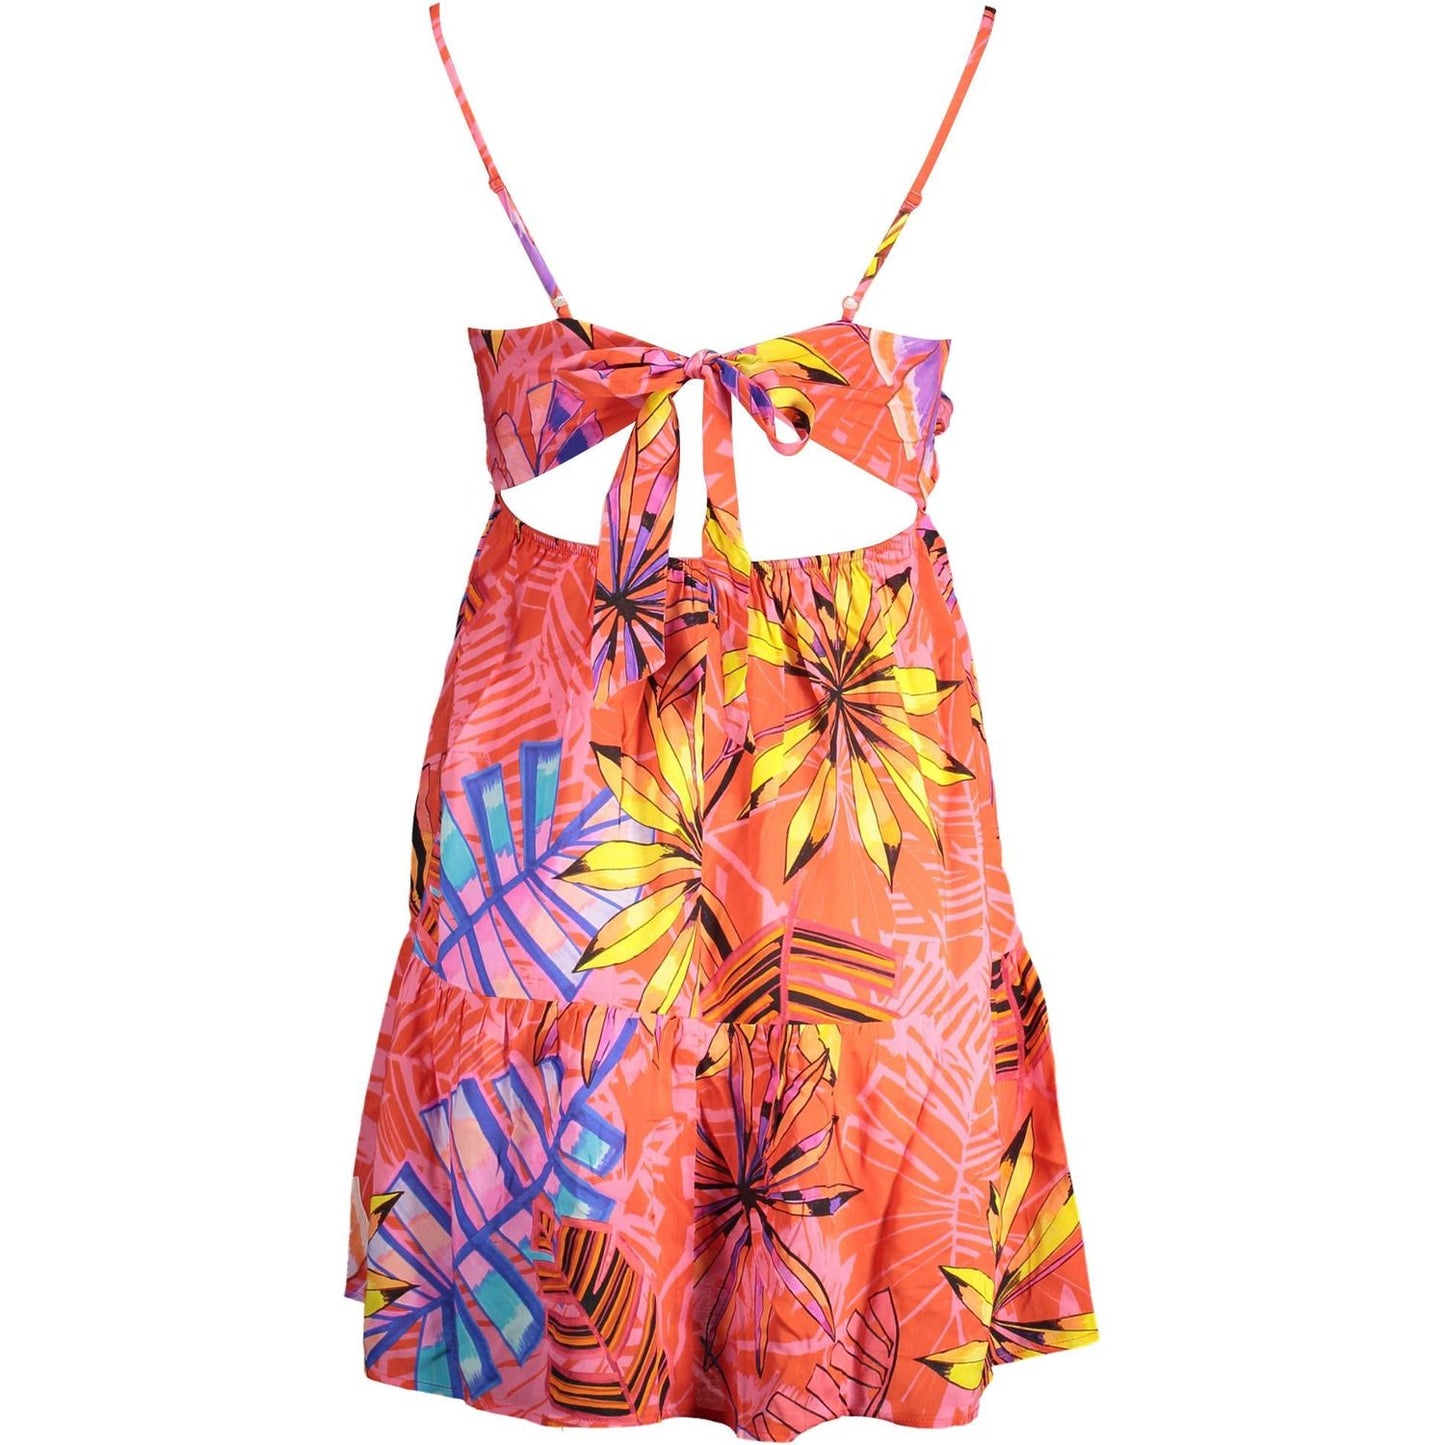 Desigual | Radiant Pink Summer Dress with Delicate Details| McRichard Designer Brands   